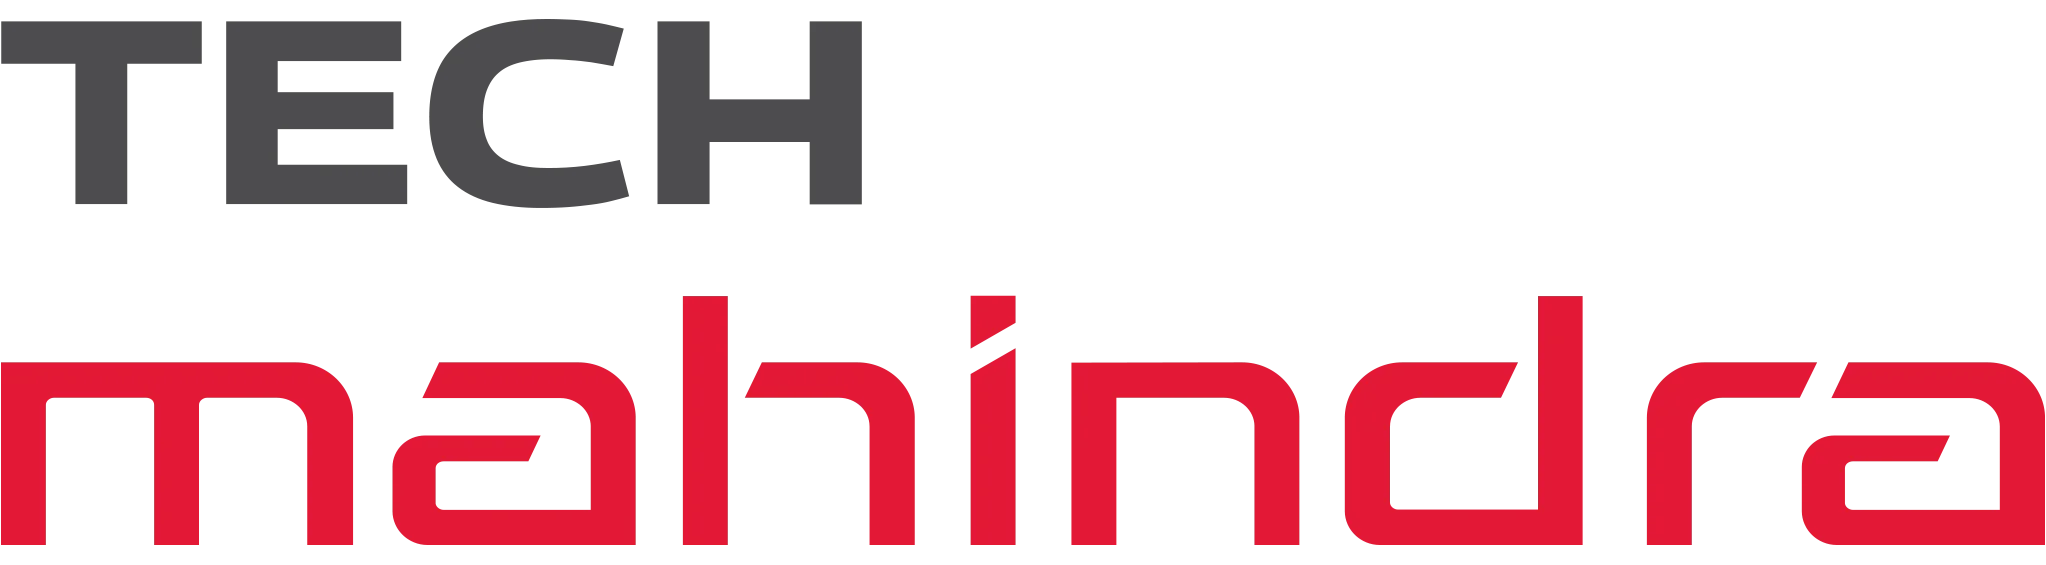 Tech_mahindra_logo